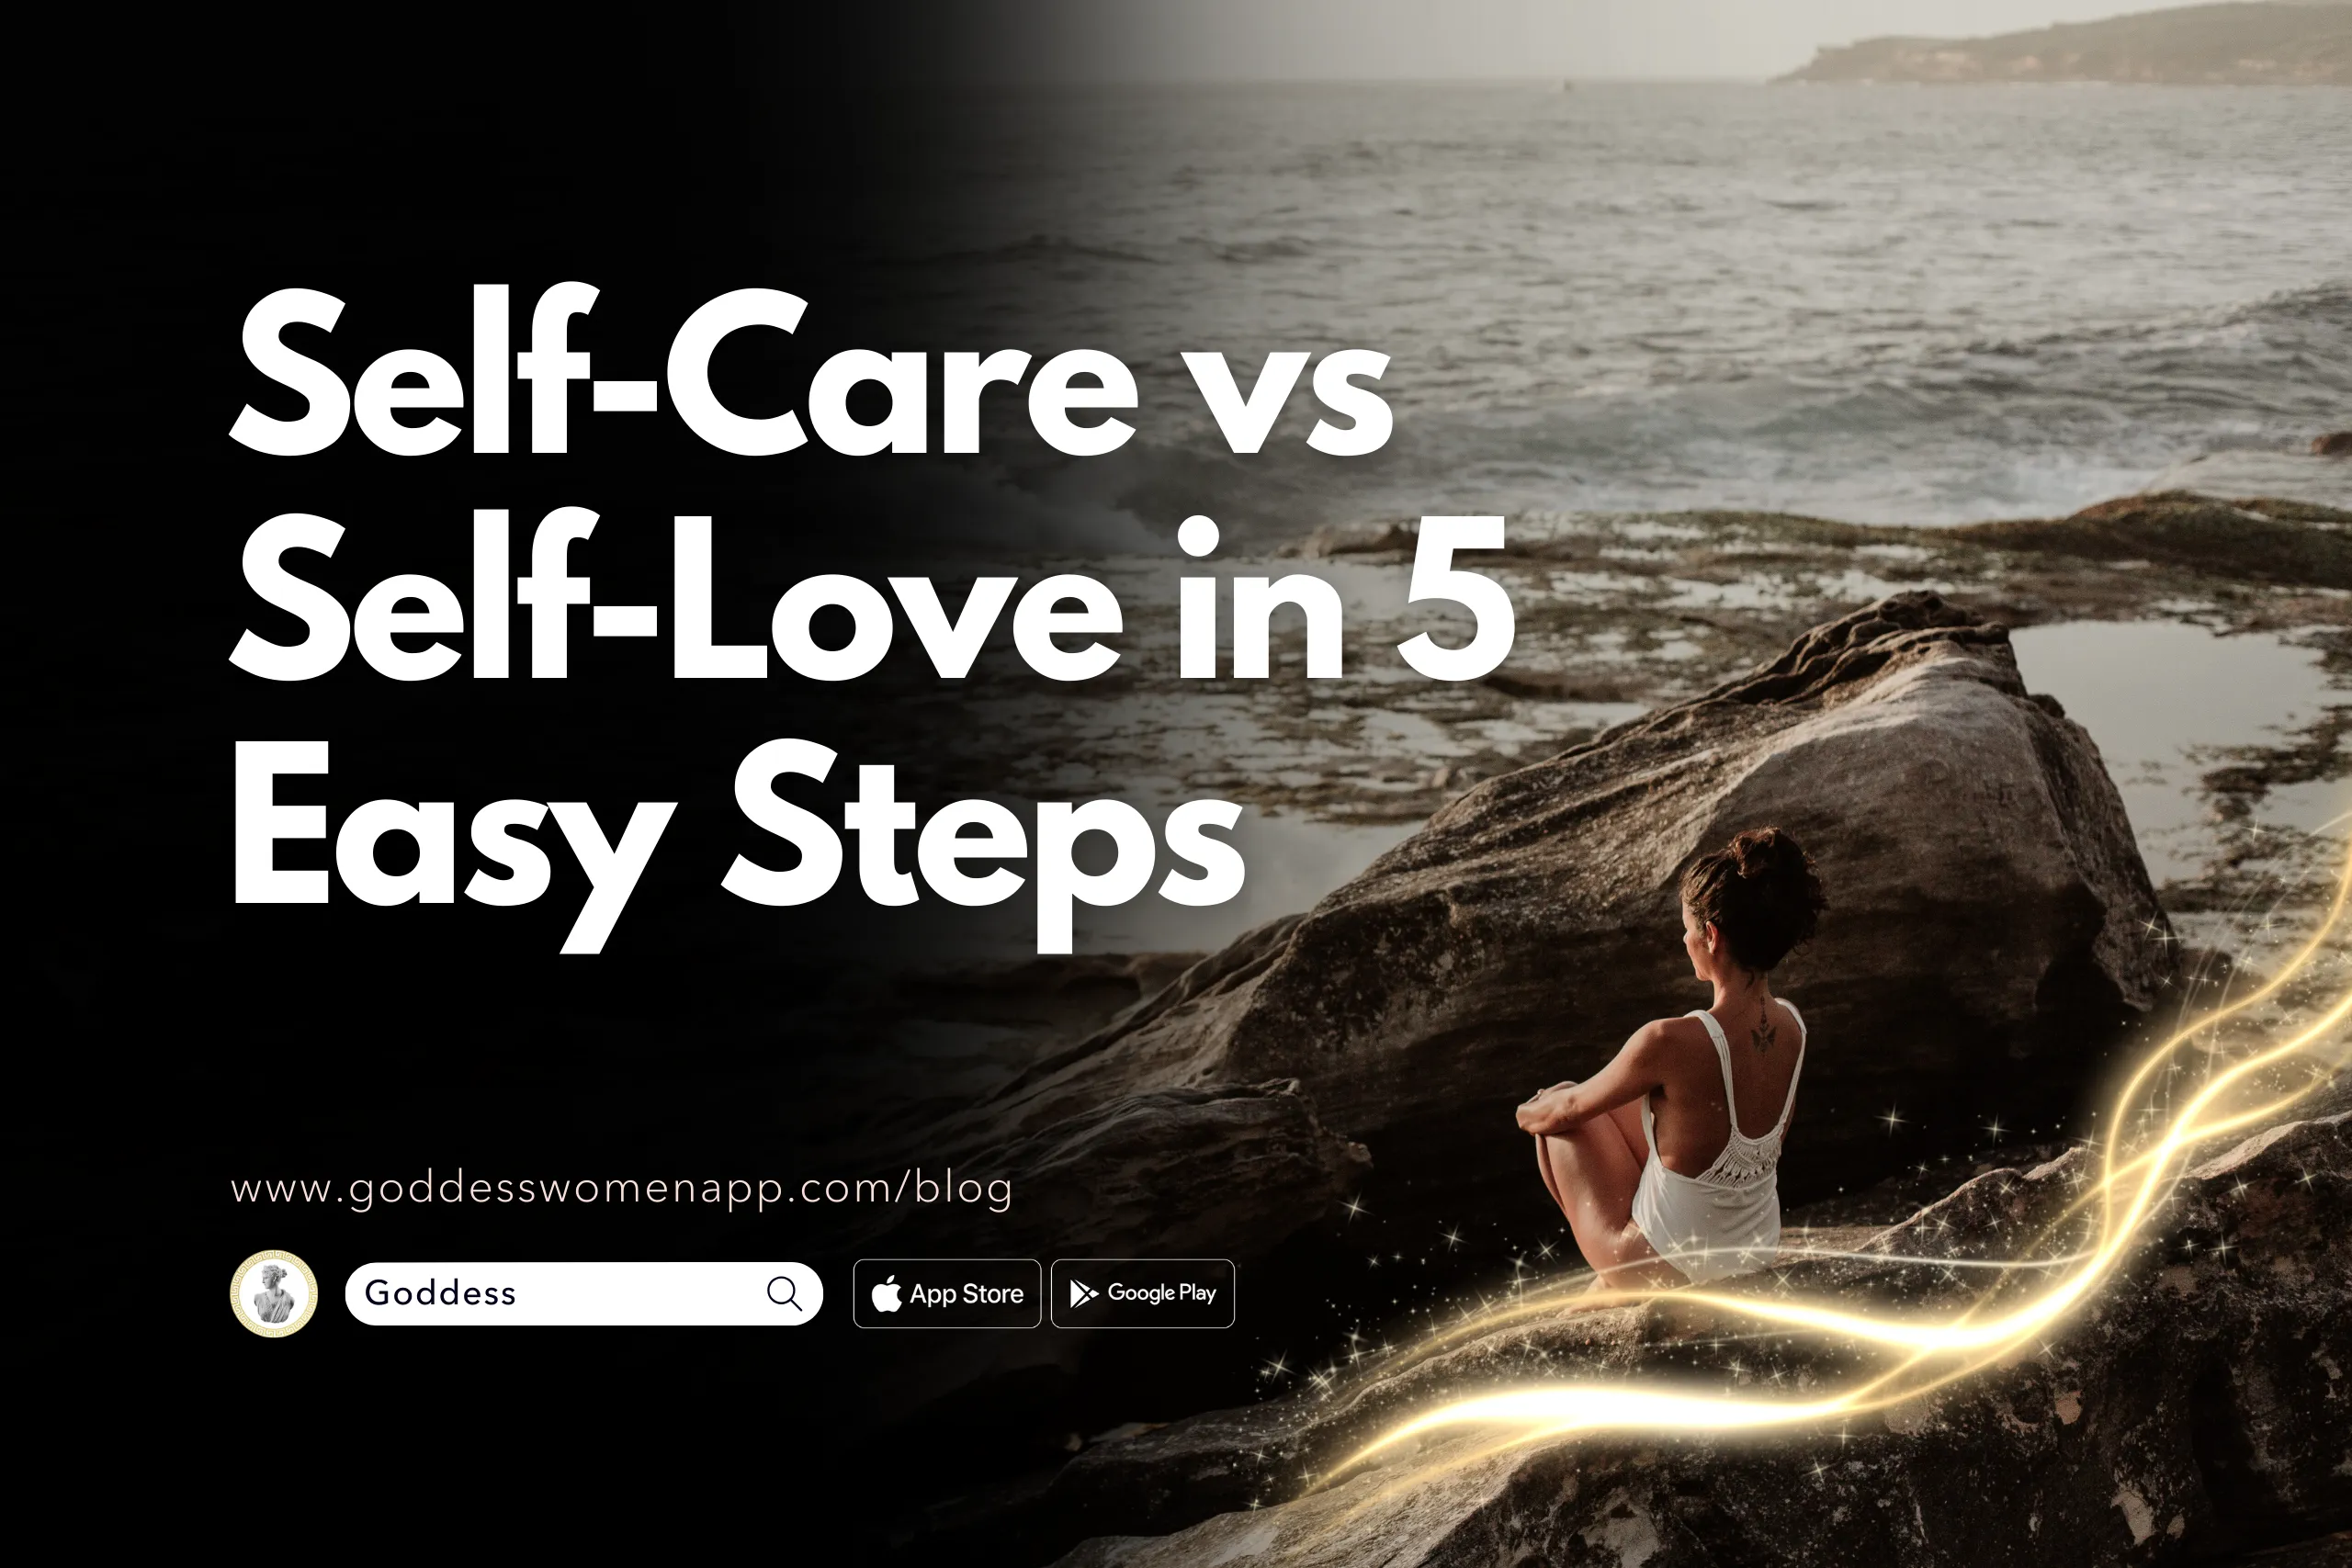 Self-Care vs Self-Love in 5 Easy Steps